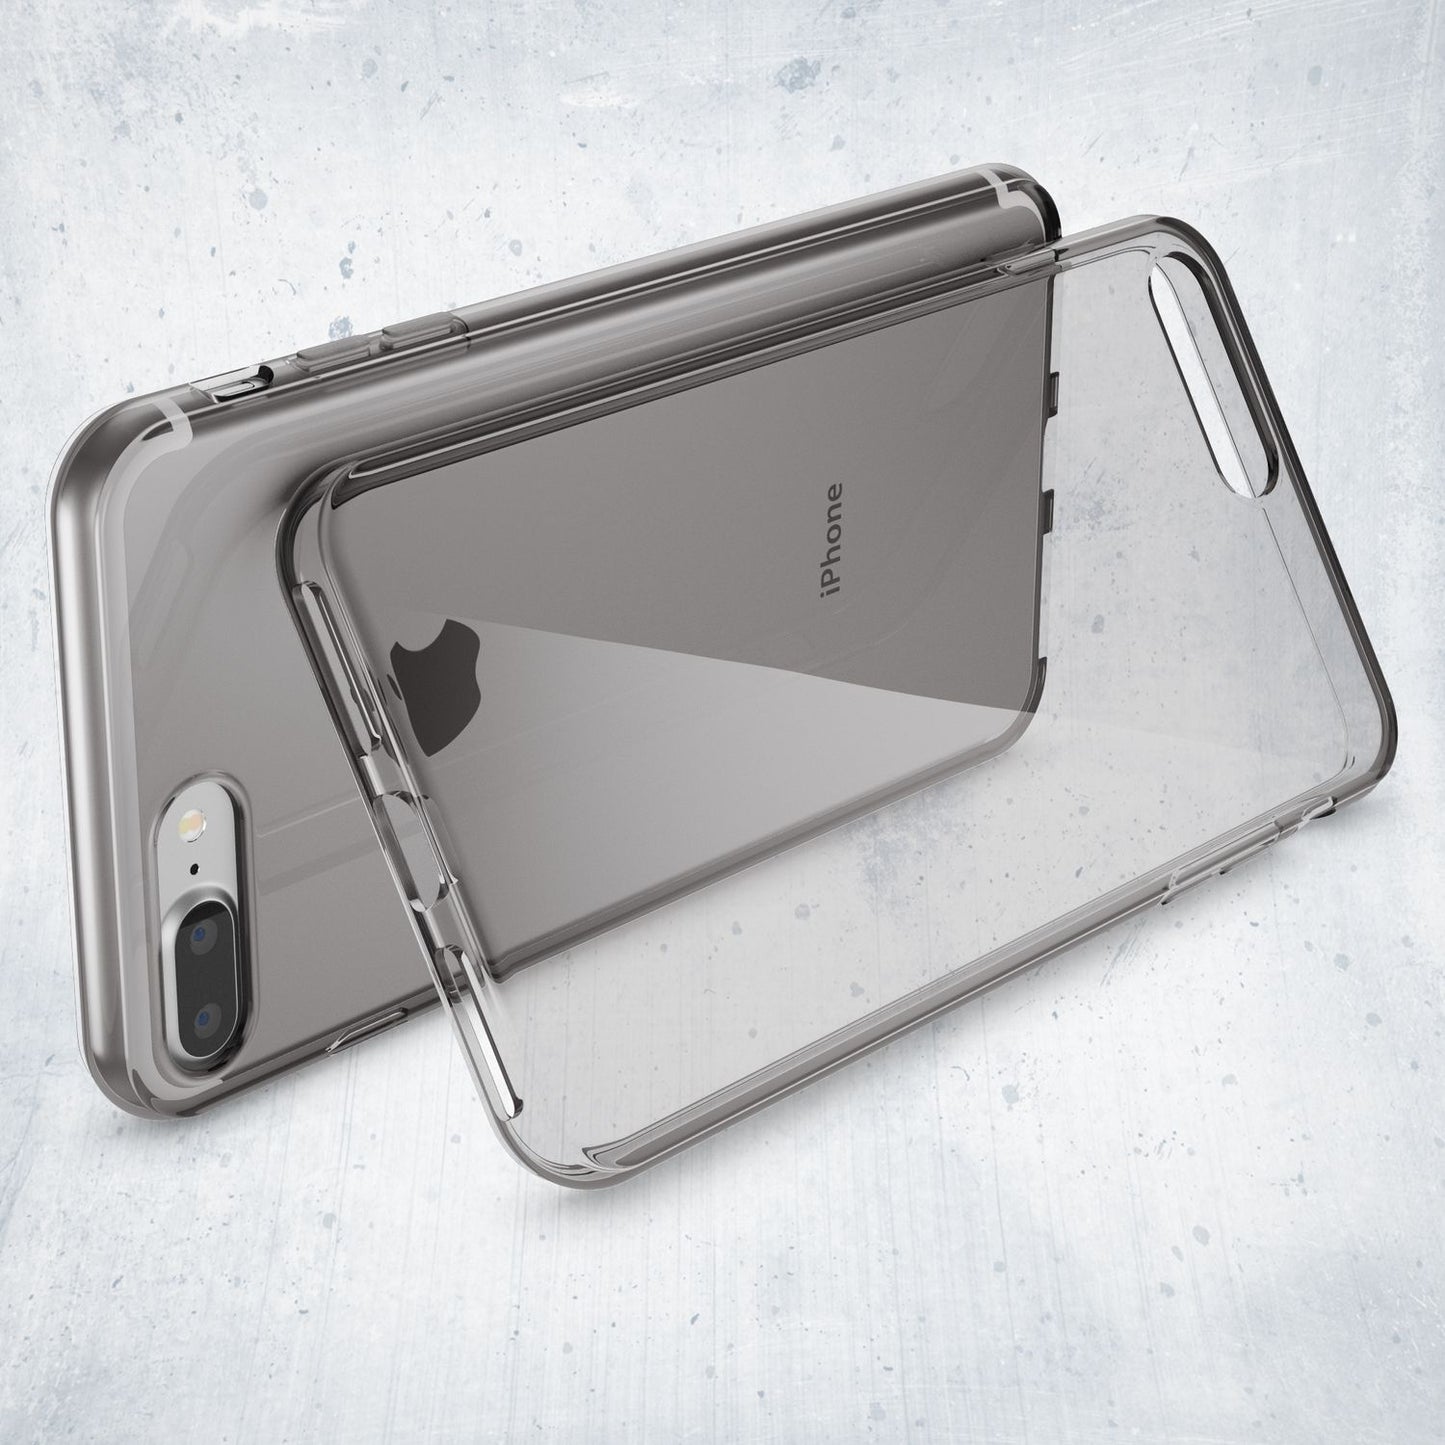 NALIA Handy Hülle für iPhone 8 Plus / 7 Plus, Silikon Case Cover Schutz Tasche